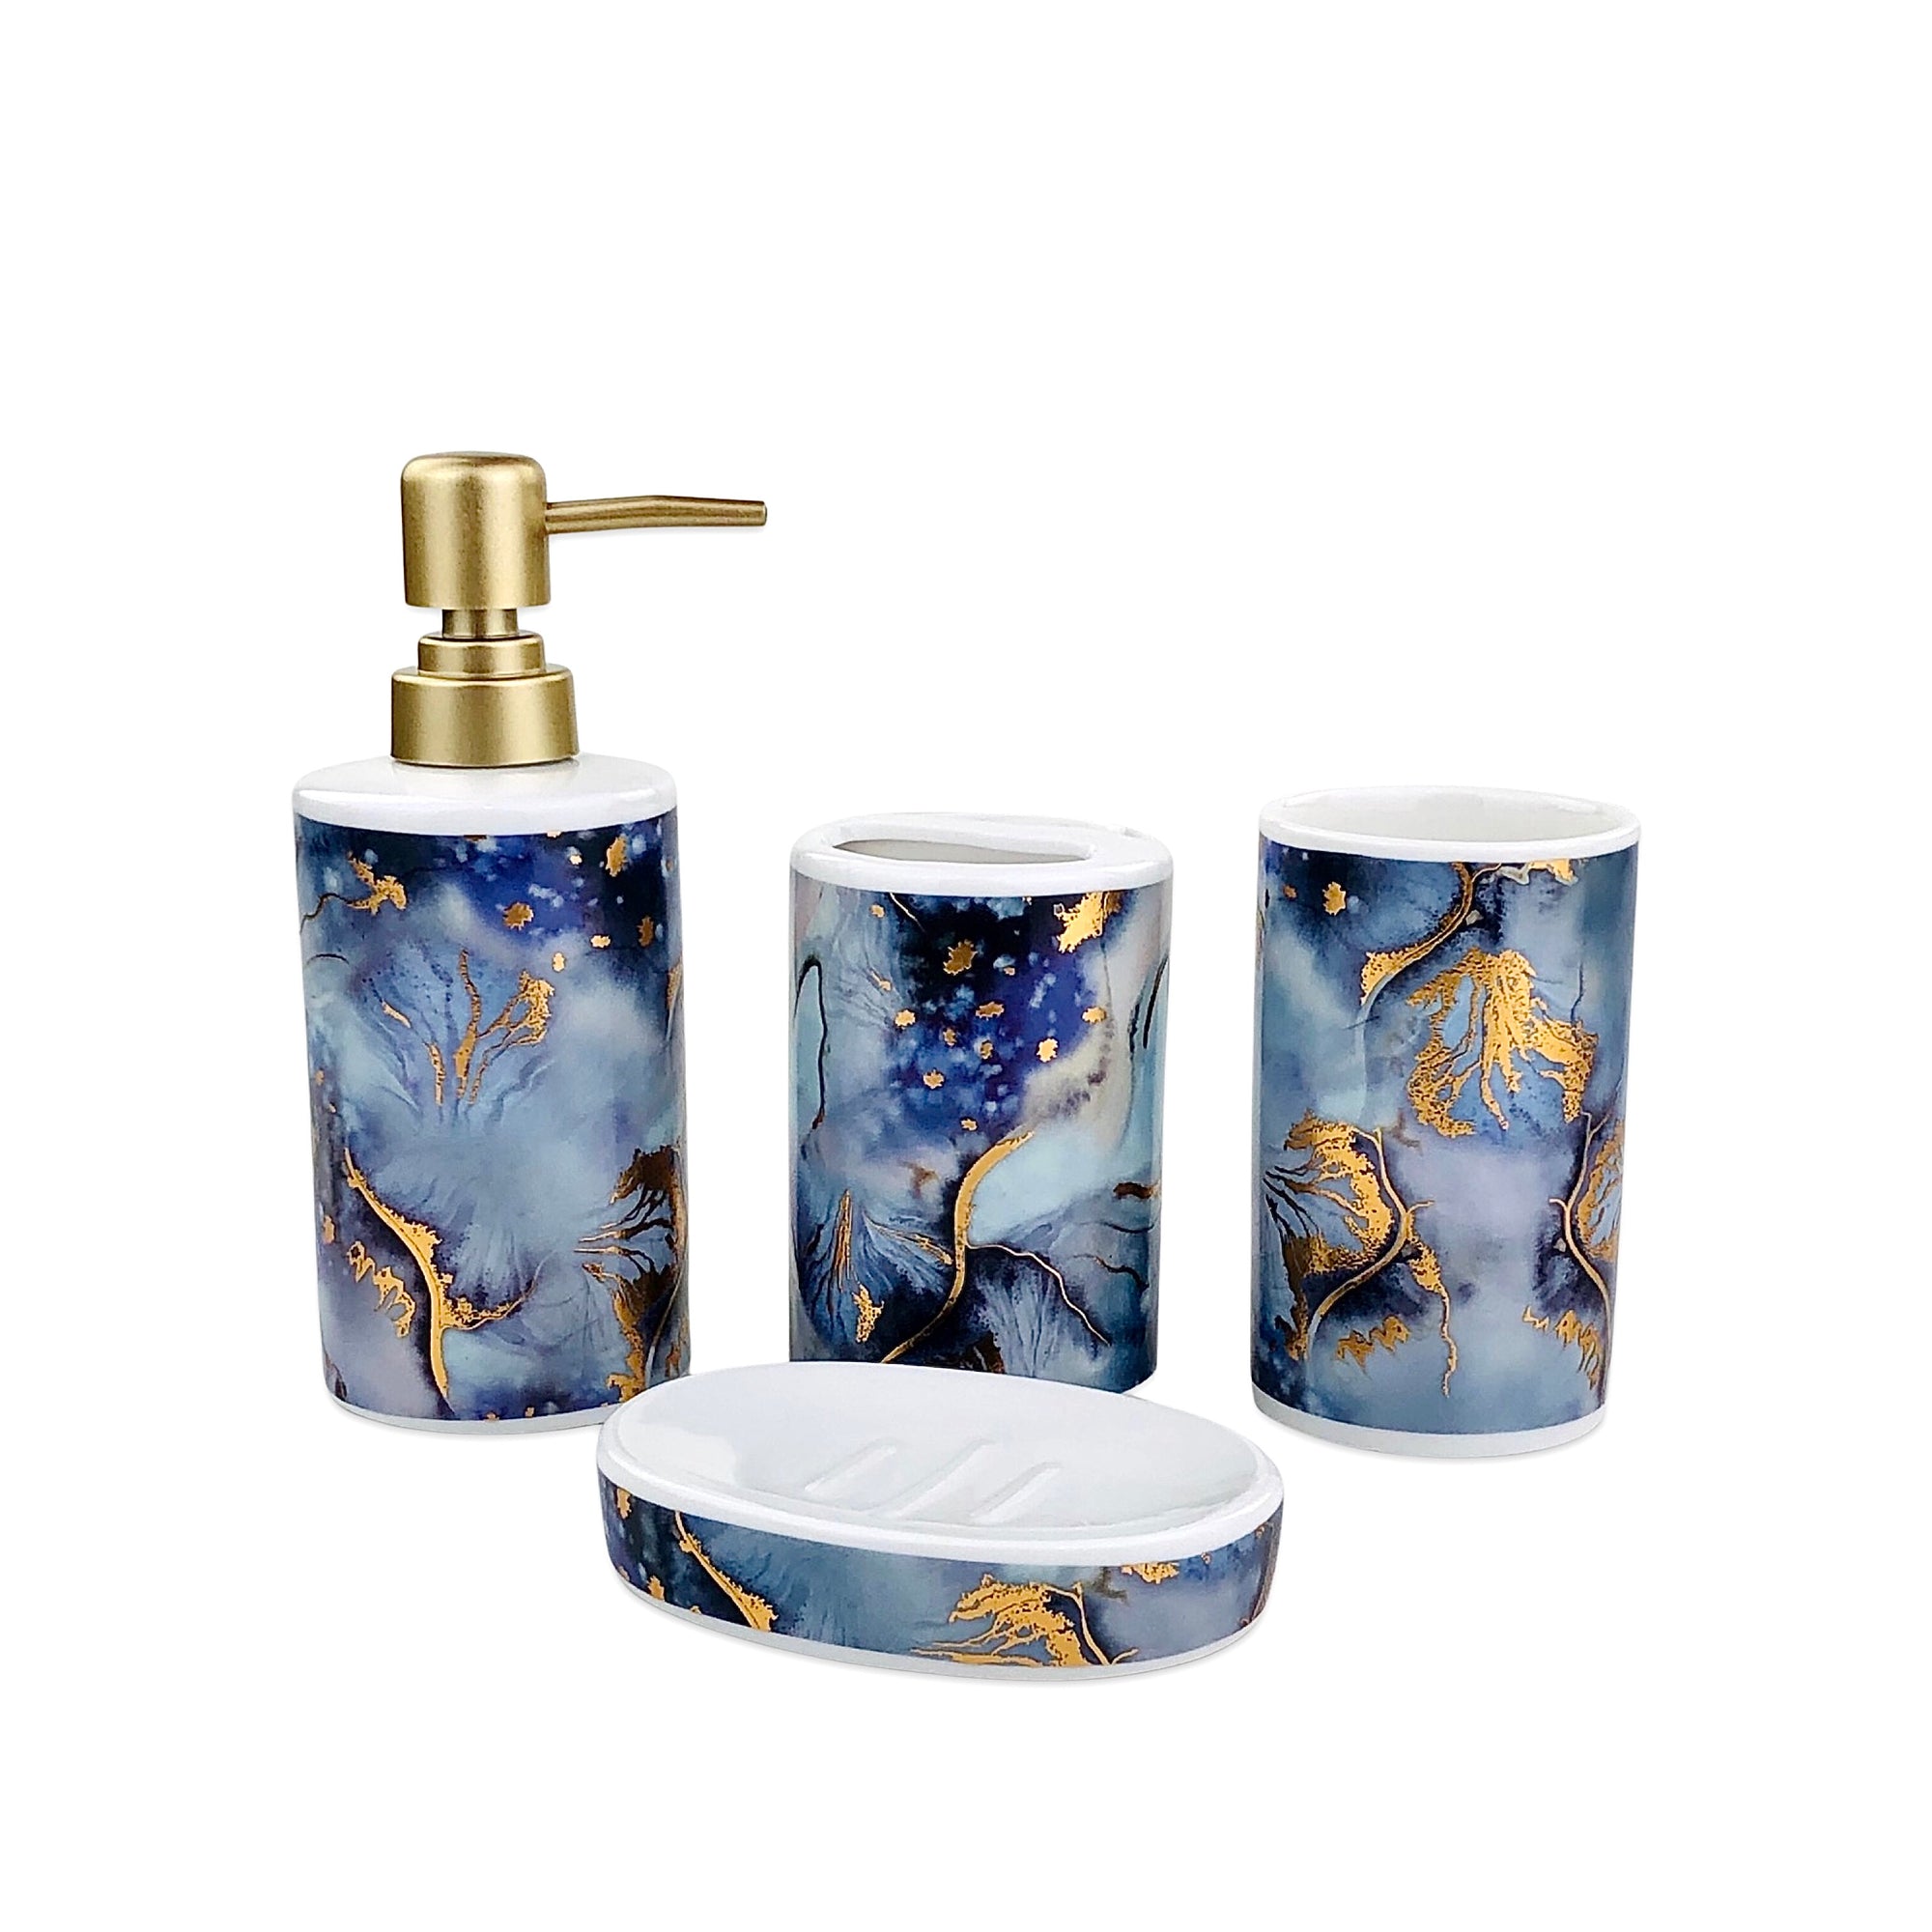 Abstract Blue Golden Bath Set